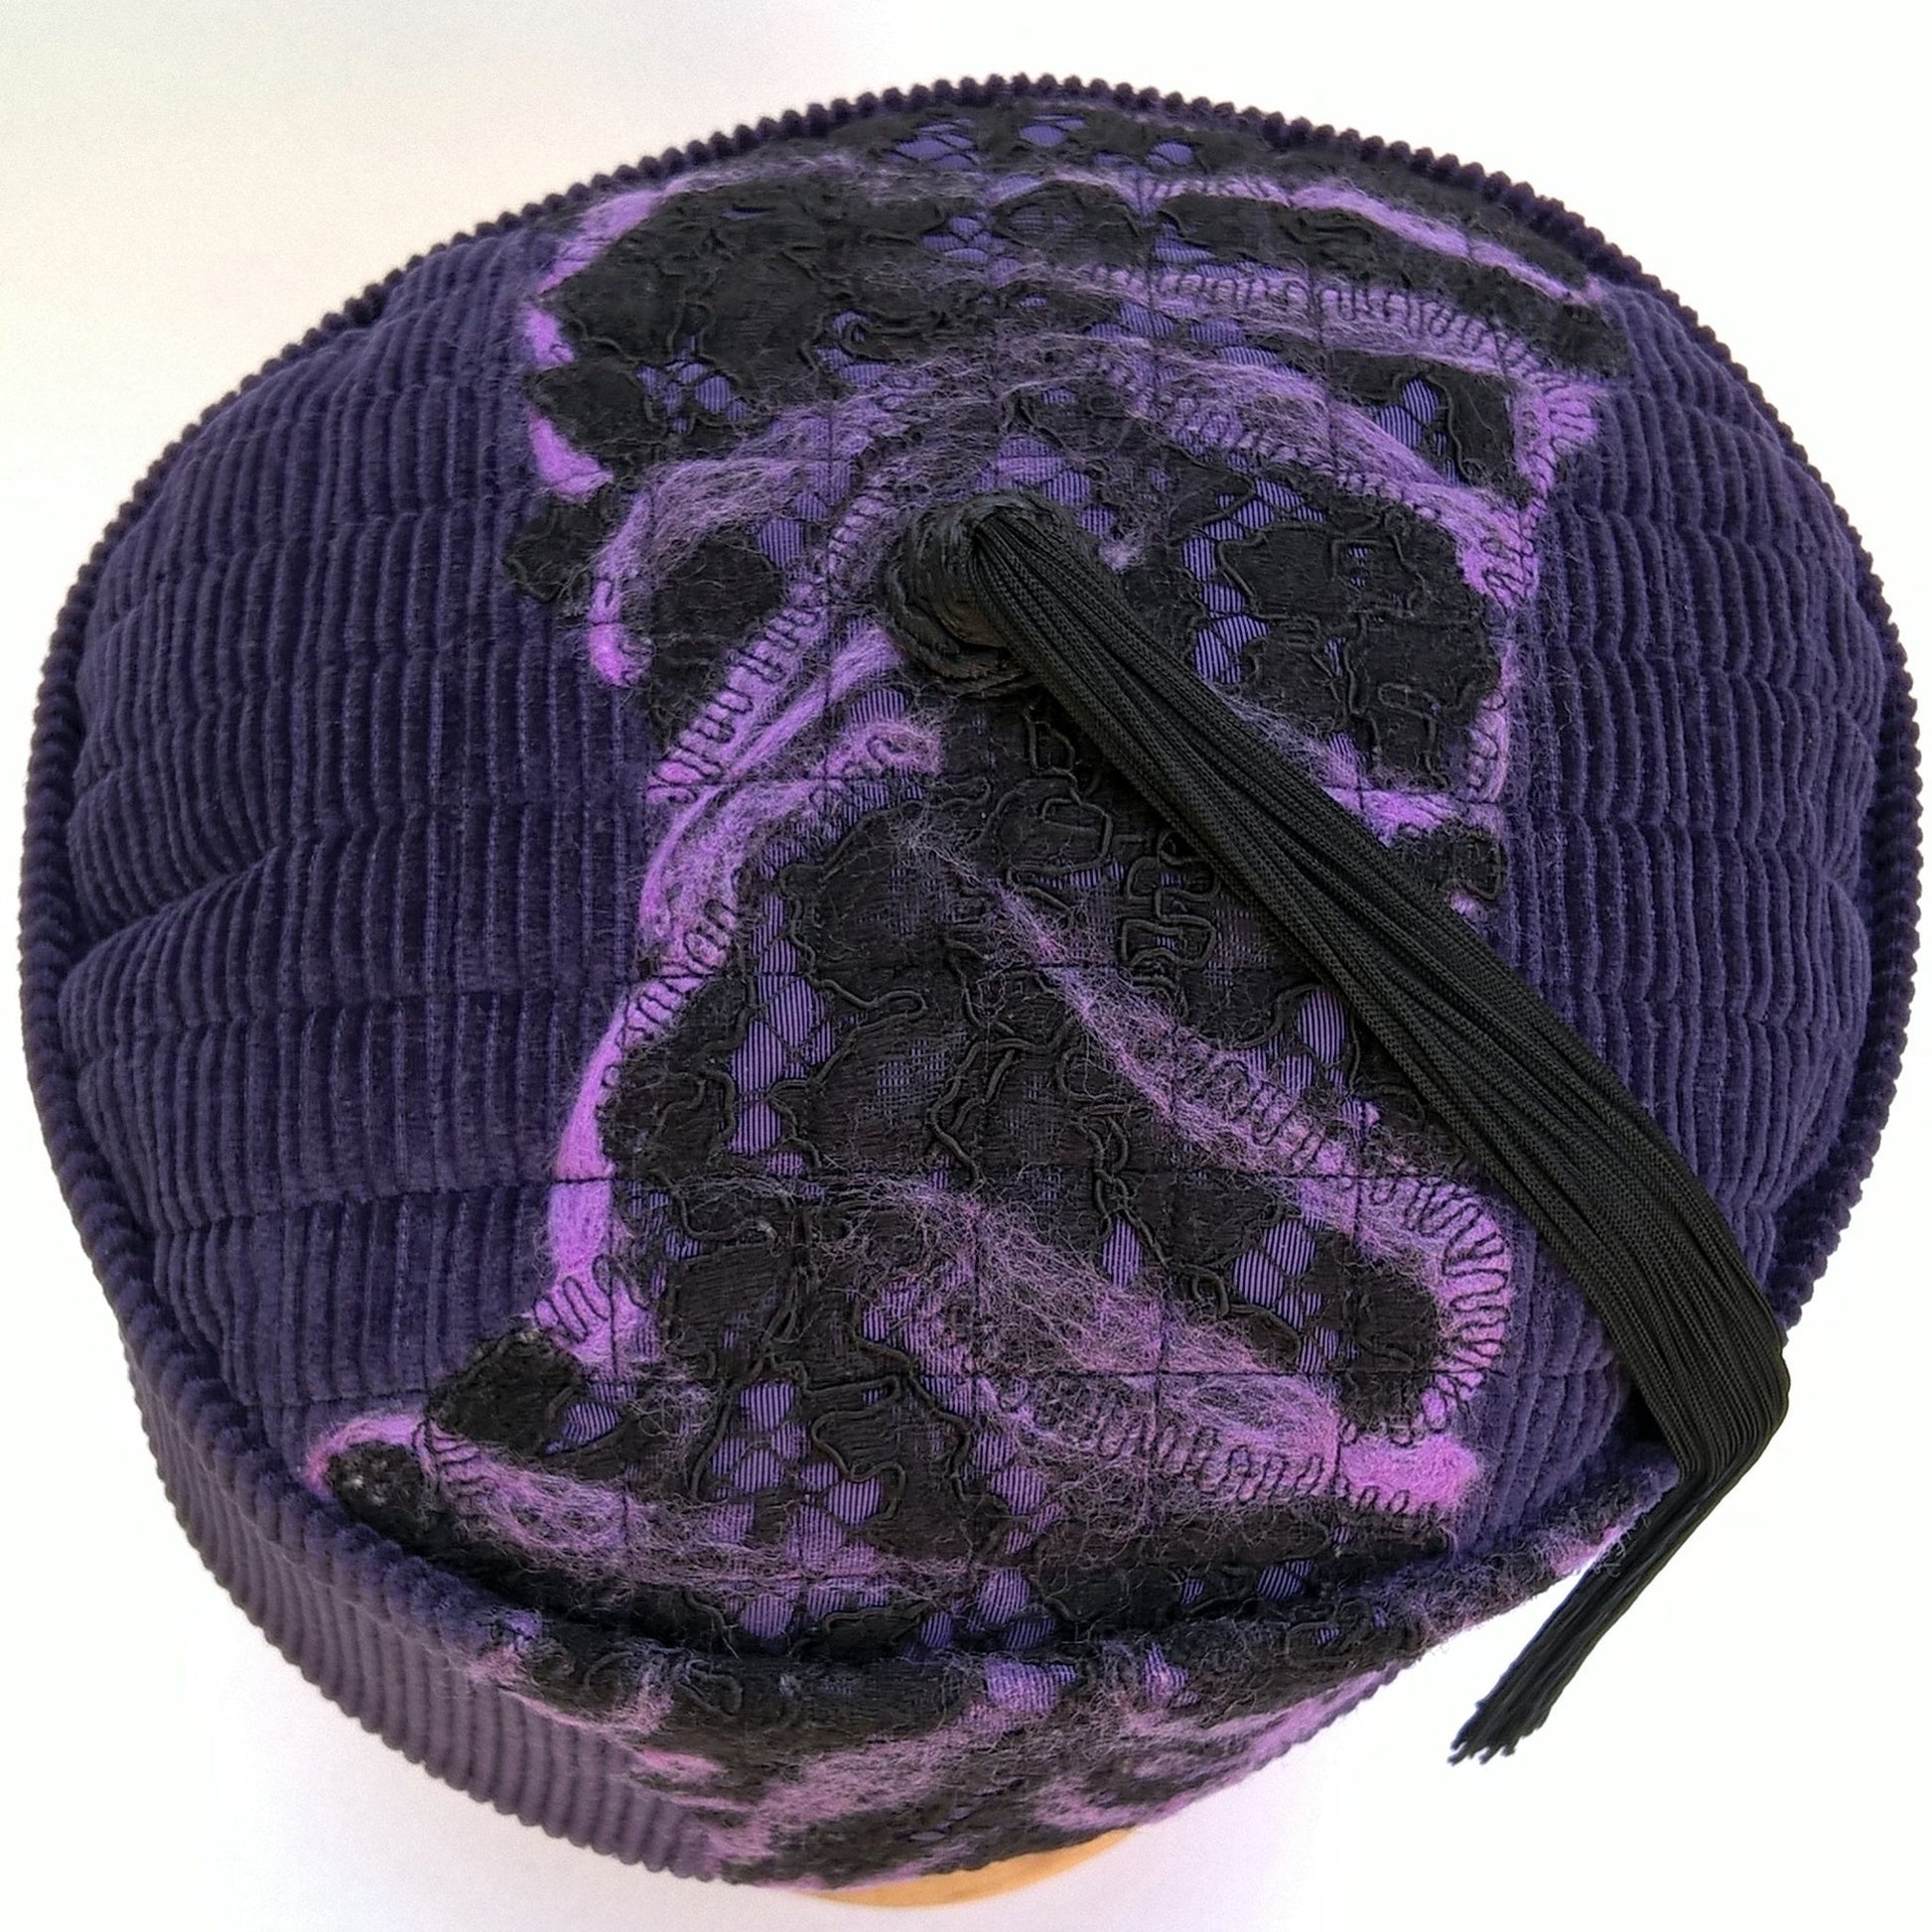 Tip of purple corduroy smoking cap with nuno felting